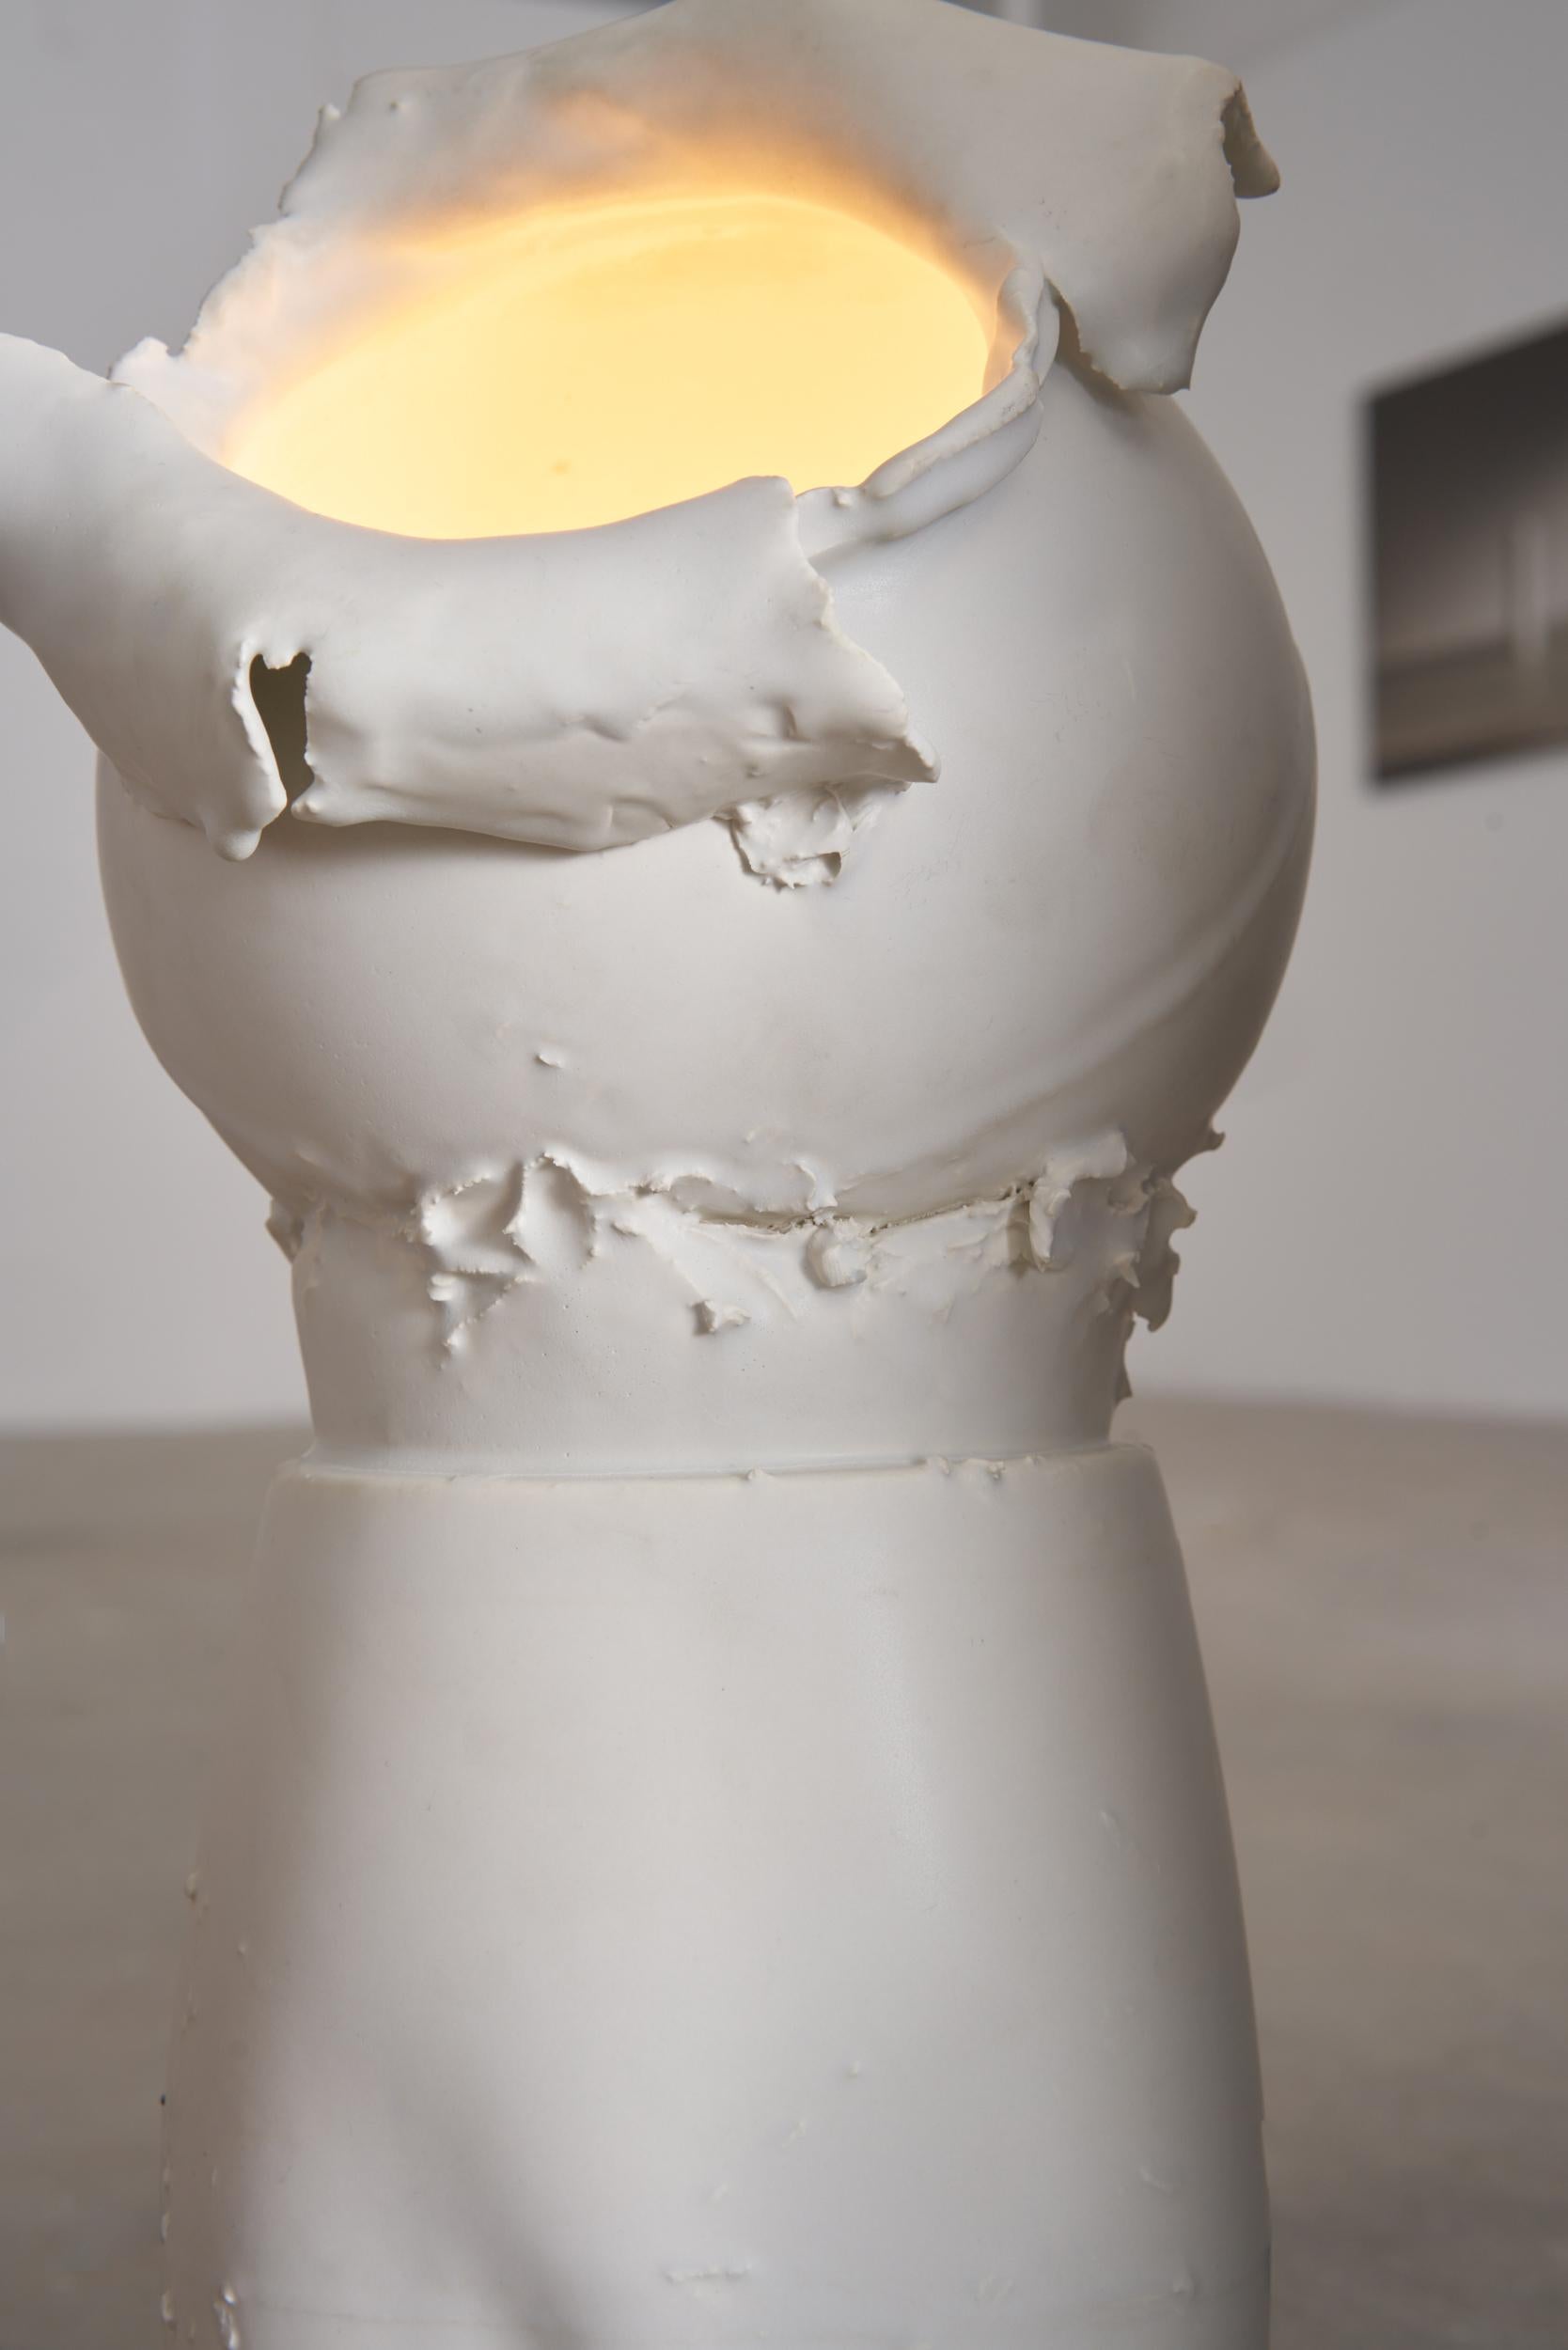 Italian Break the Mold: Breganze+Fara ceramic lamp by Jenna Basso Pietrobon For Sale